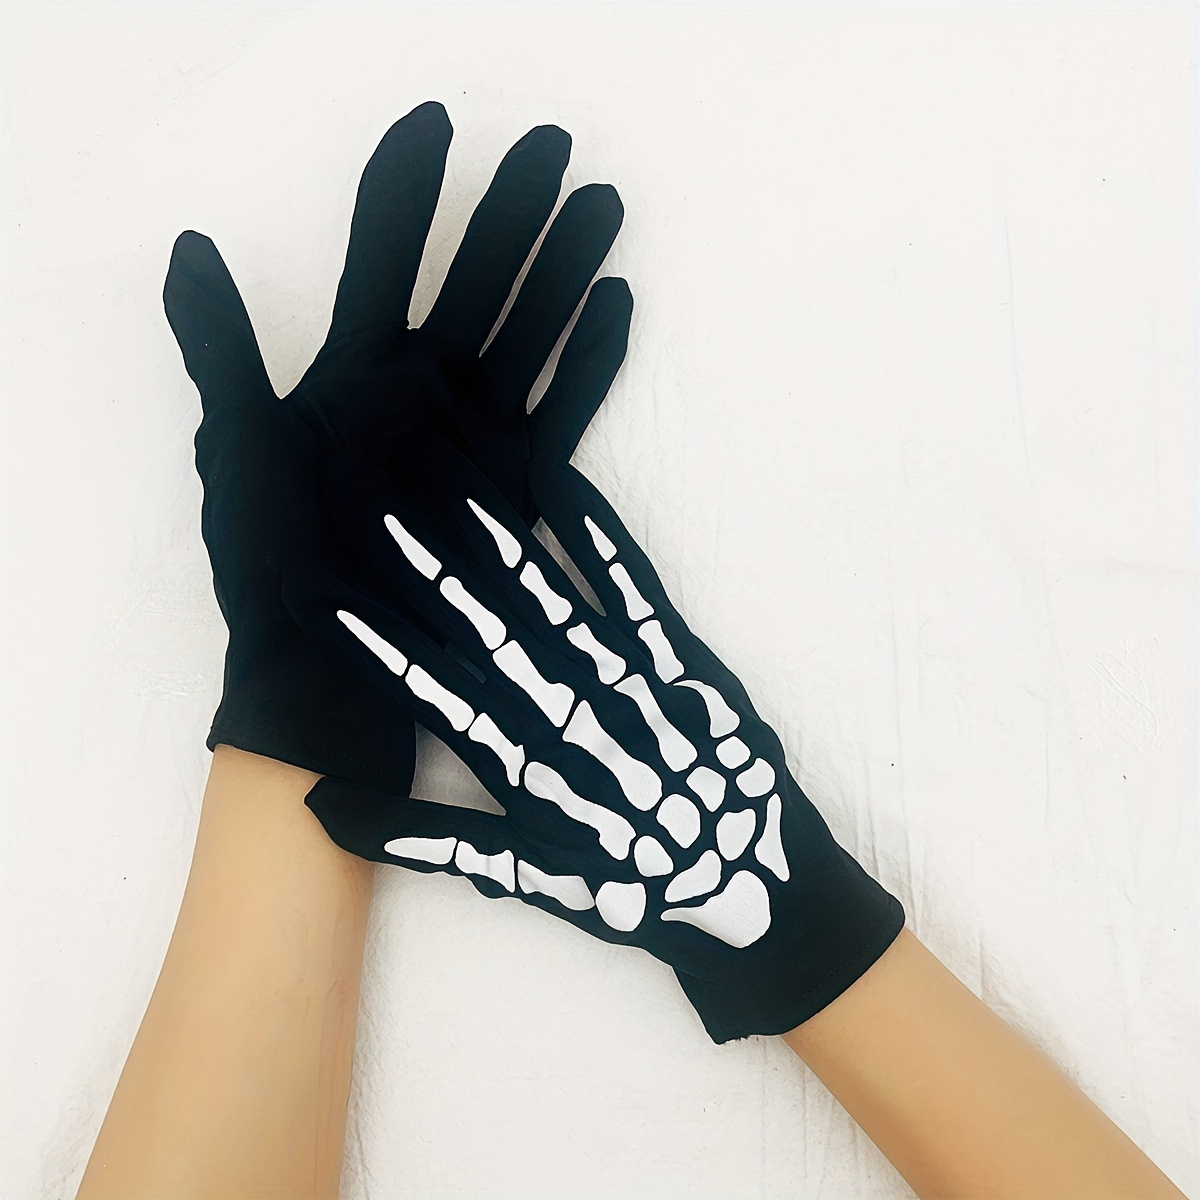 Leather Fingerless Gloves for Men, Fingerless Gloves, Black Driving Gloves,  Winter Half Gloves, Touch Screen, Half Palm Gloves,finger Cut -  Canada